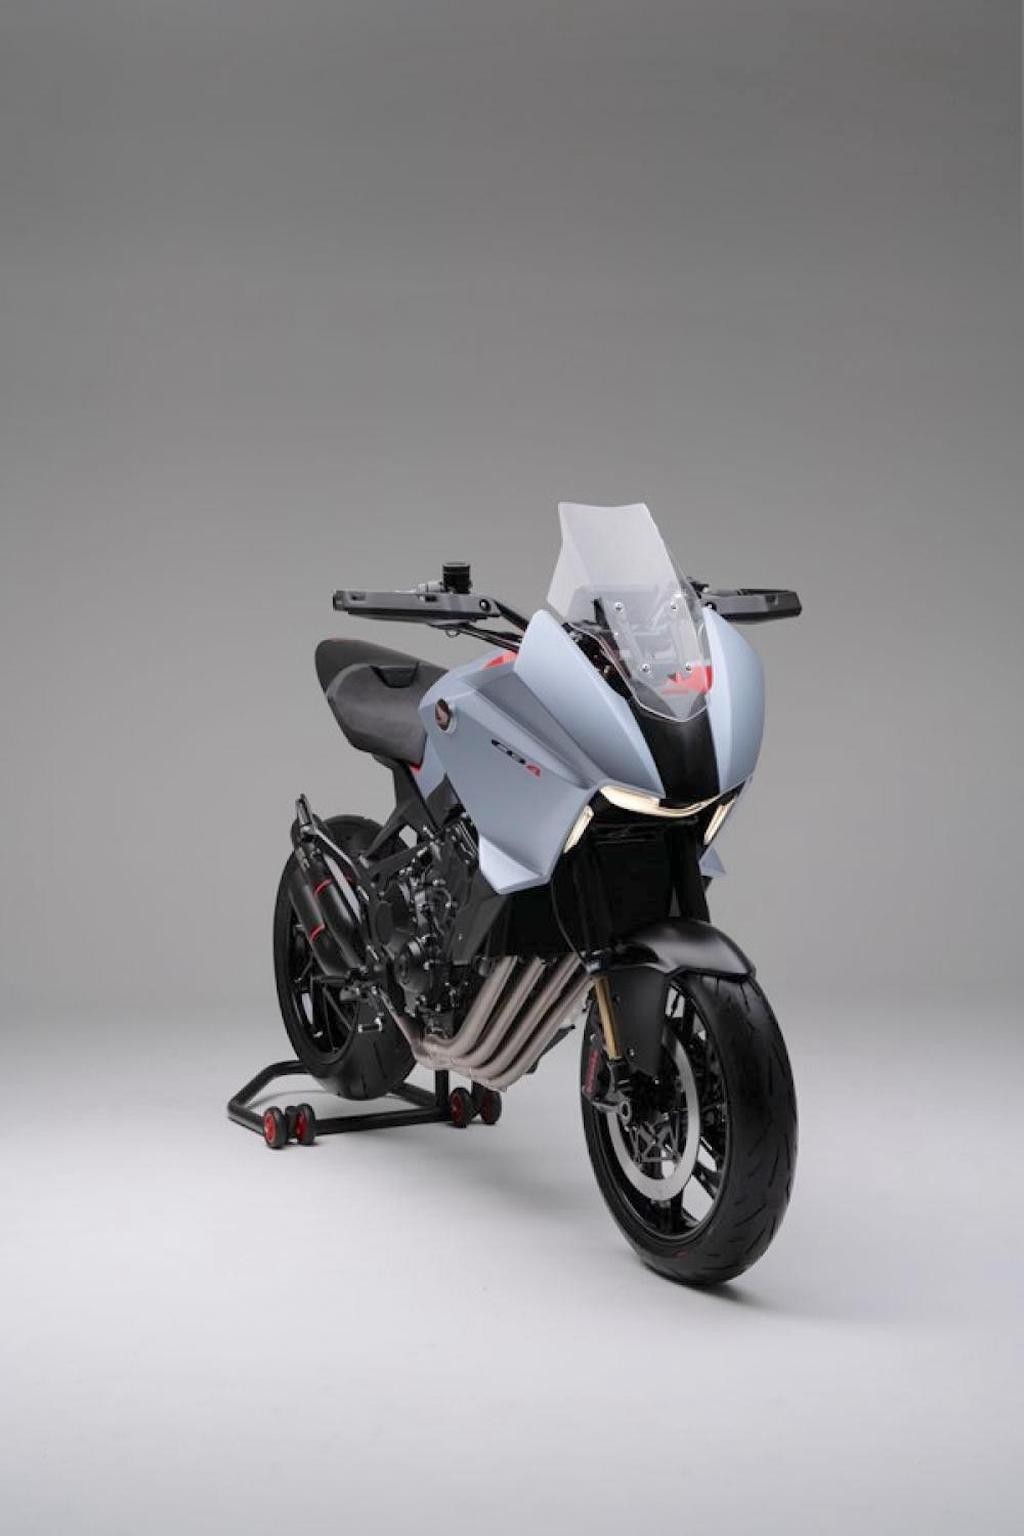 Honda đang muốn “chĩa súng” vào BMW với chiếc CB1000R sport touring tuyệt đẹp này? ảnh 8